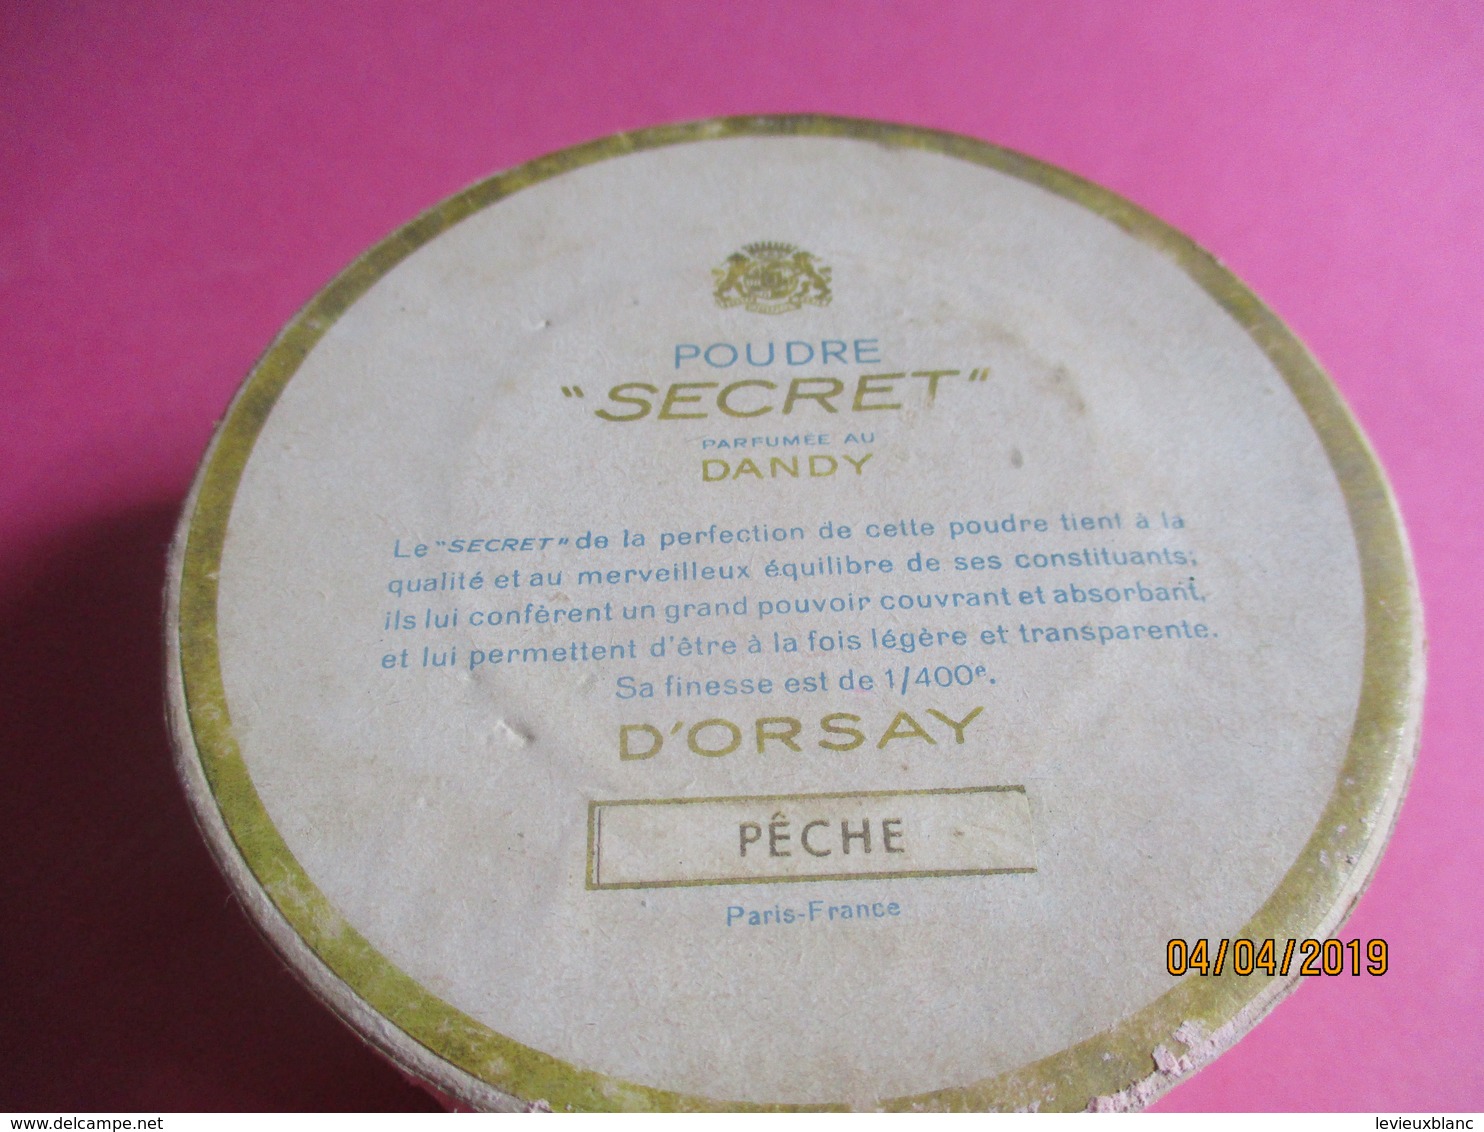 Maquillage/Boite de Poudre de riz/ D'ORSAY, Paris/ Poudre " Secret"/Parfumée au DANDY/ Pêche /Vers 1930-50    PARF187